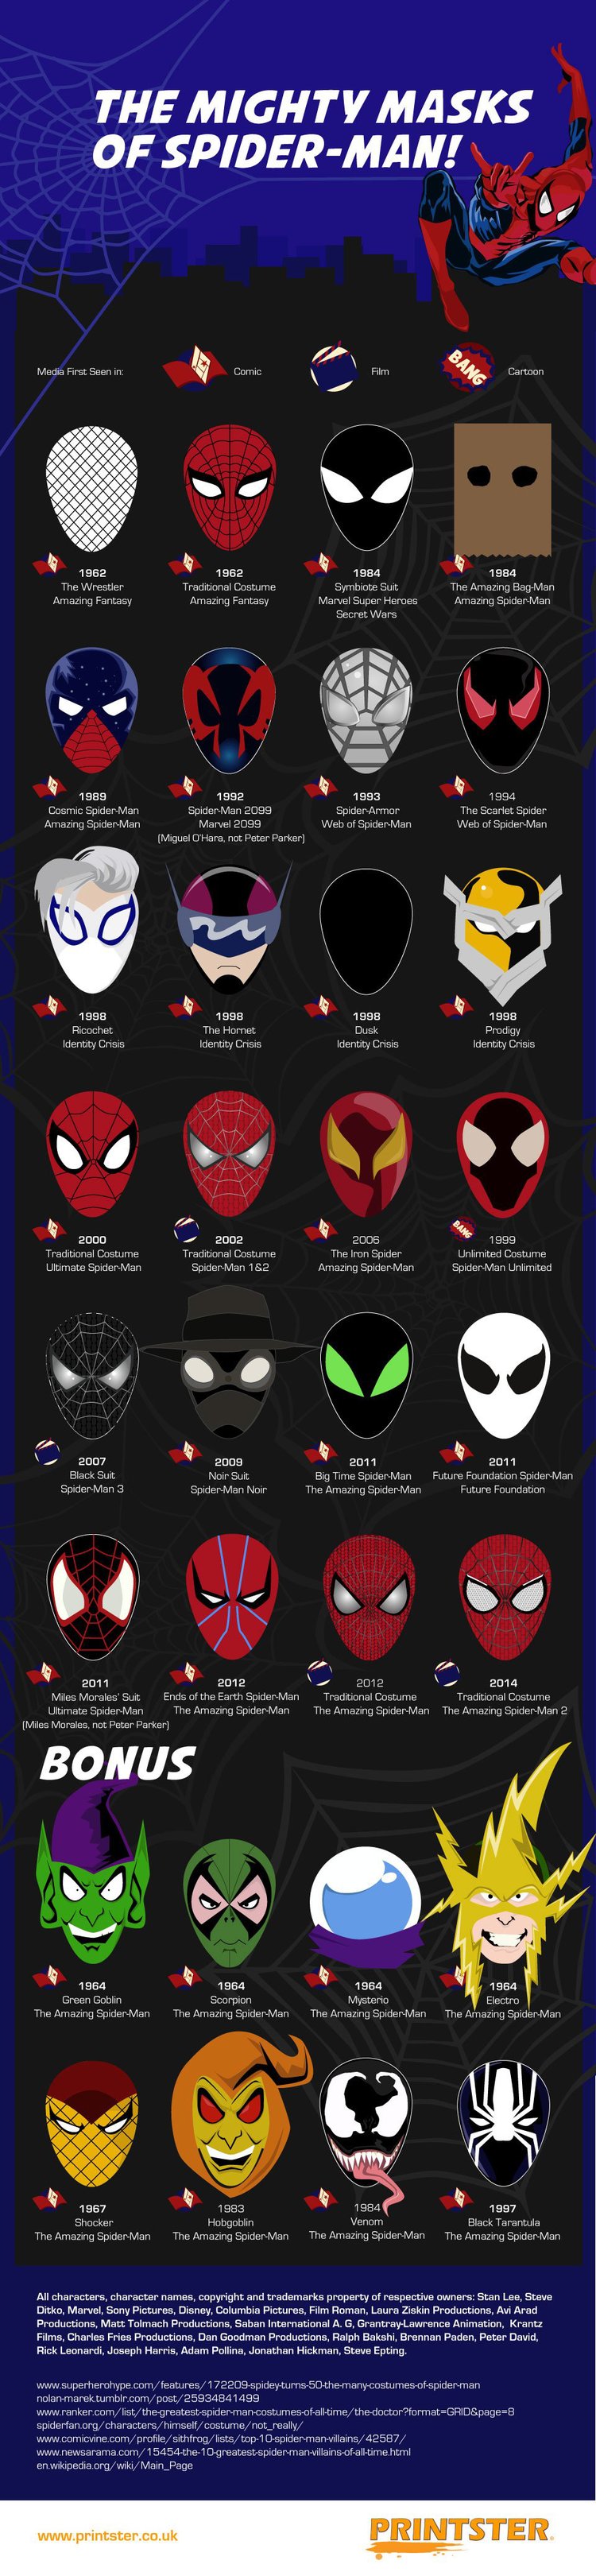 spiderman masks